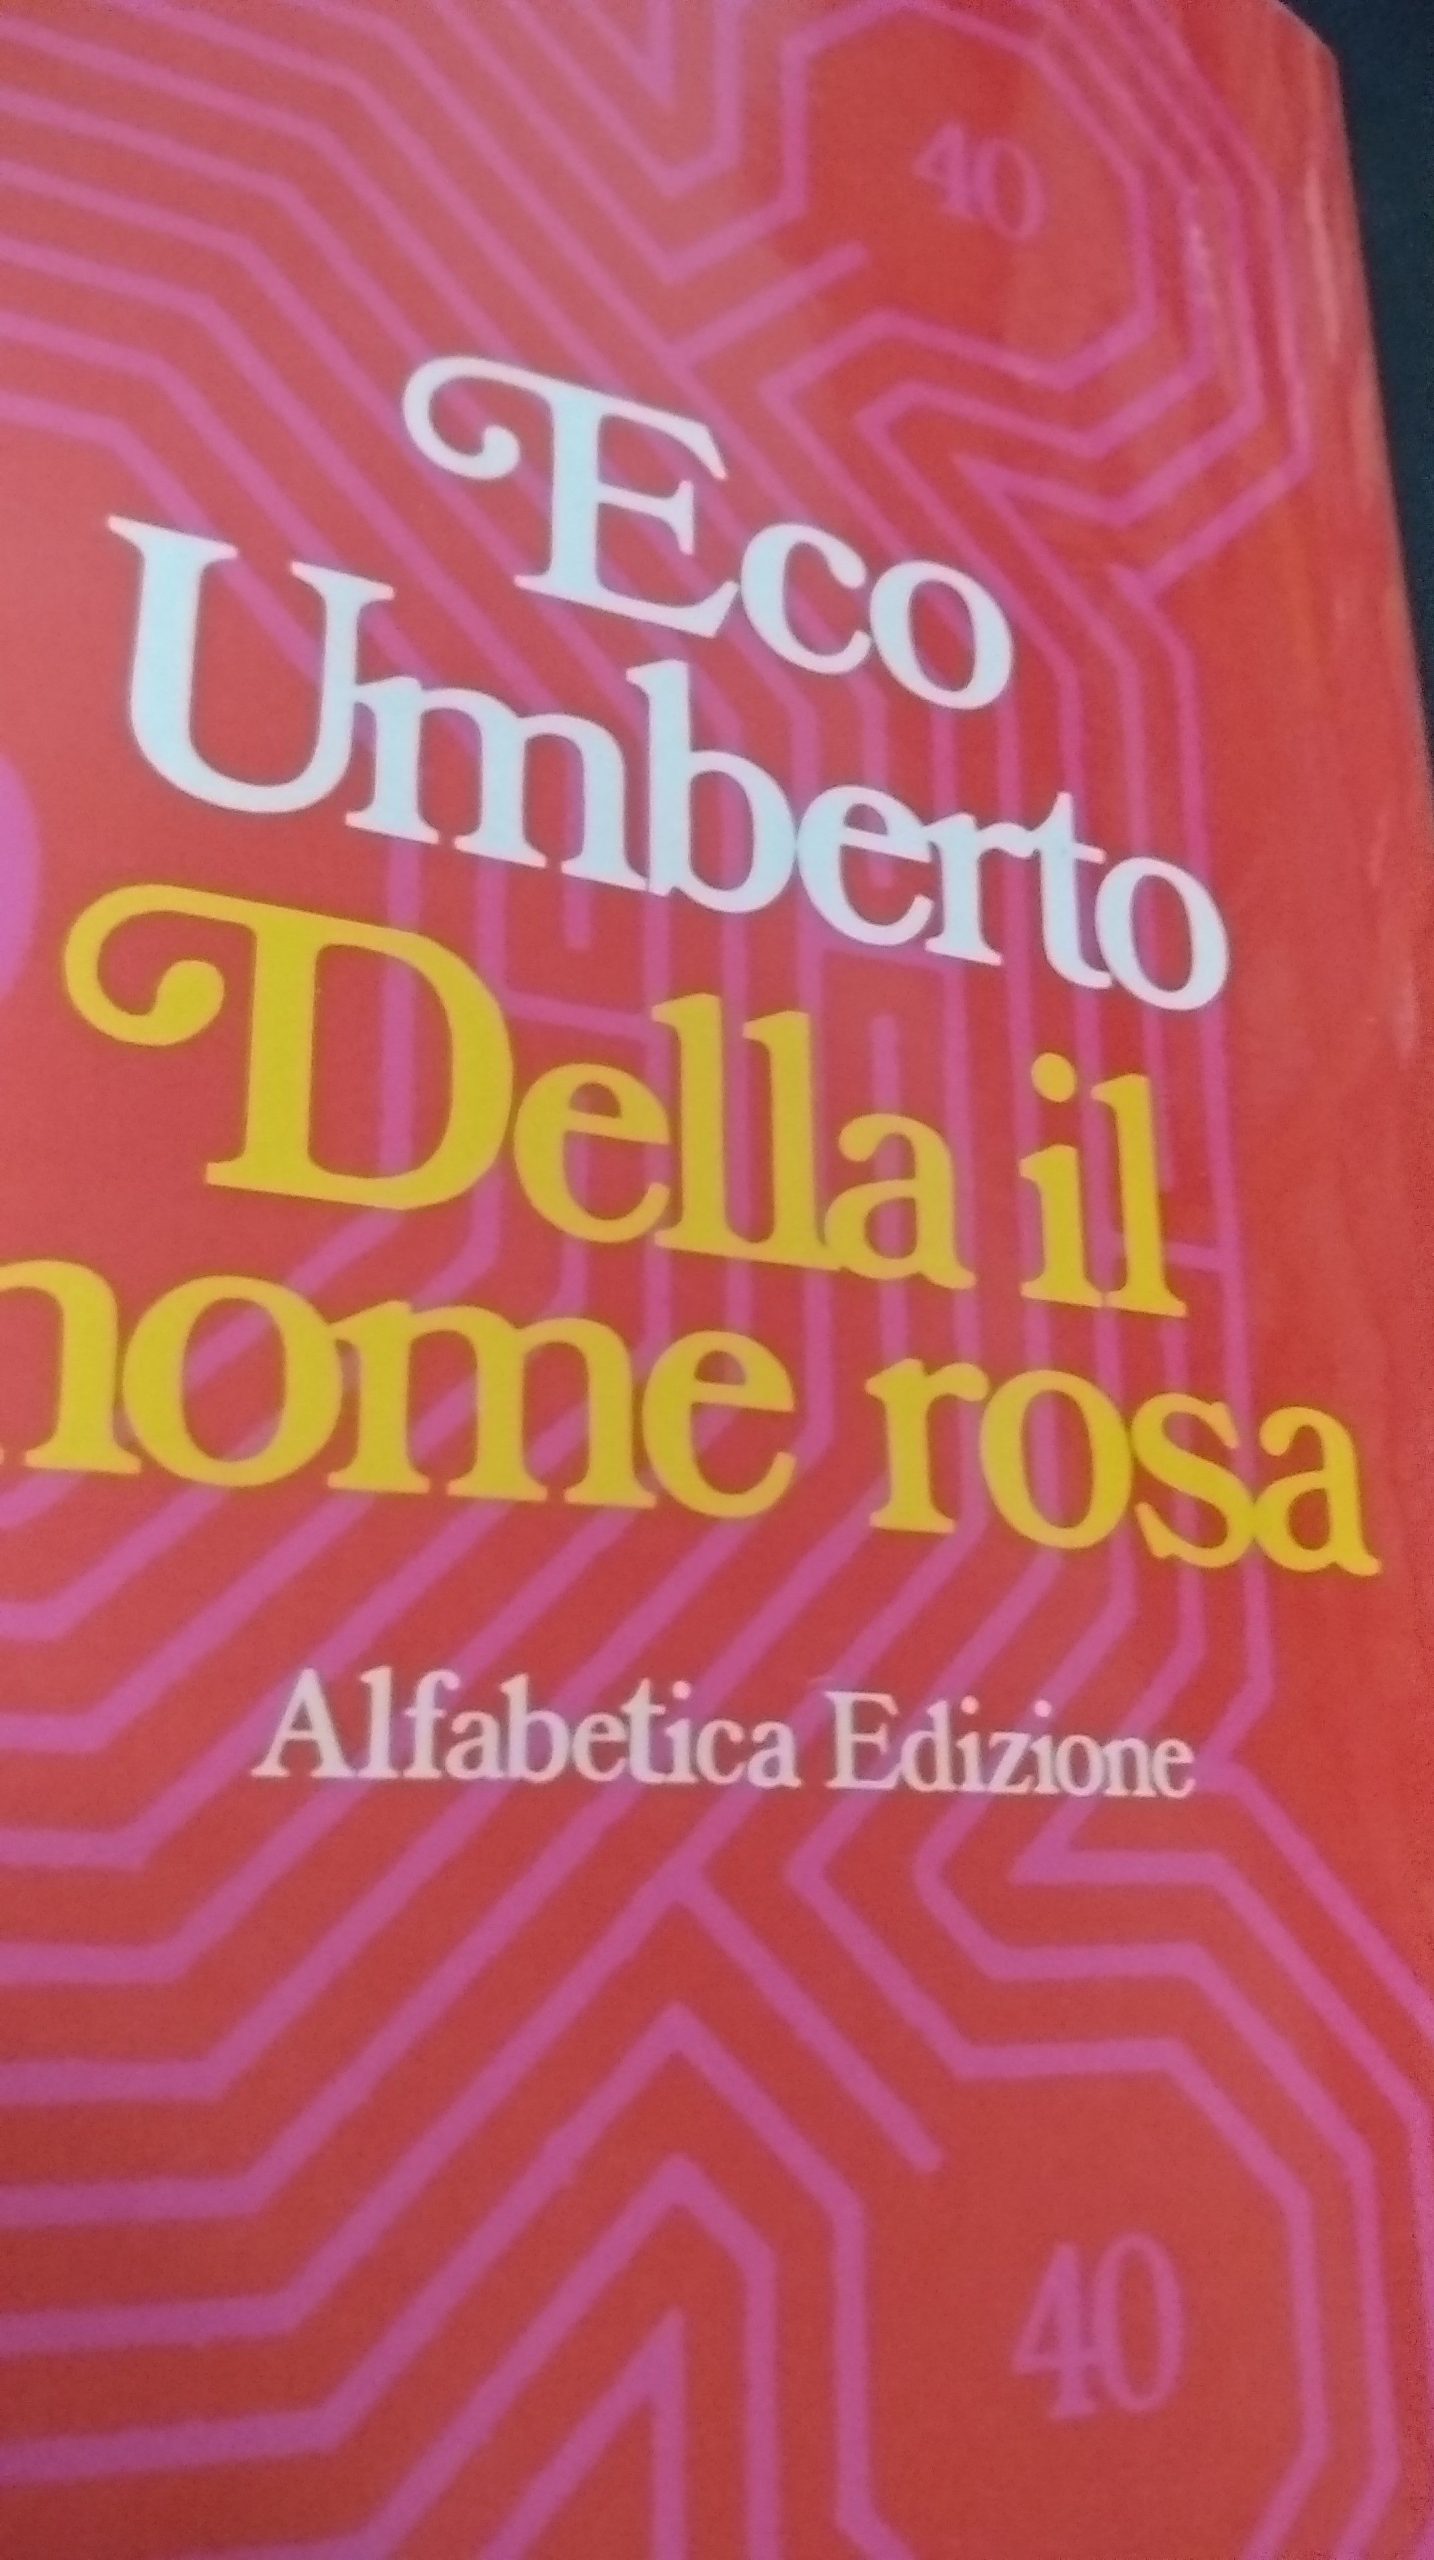 Esce “Della il nome rosa” di Eco Umberto: un’edizione alfabetica!